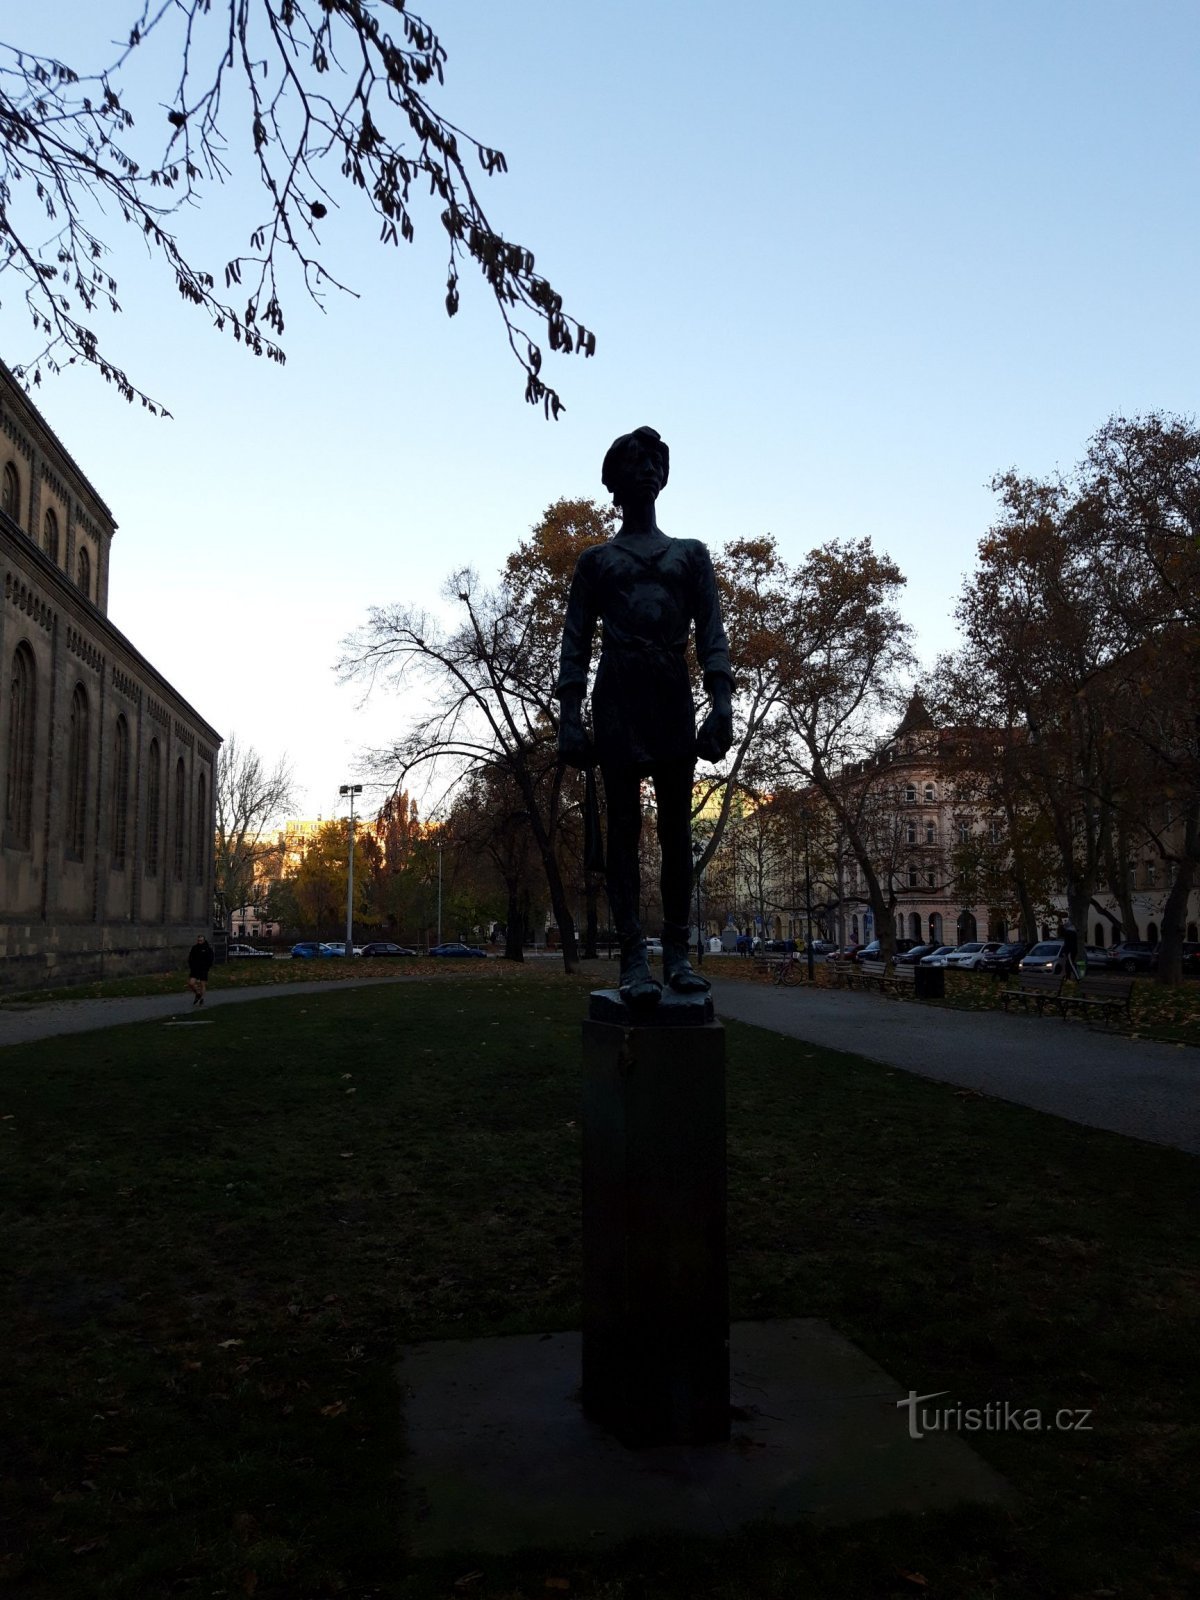 Praga și statuia spălătorului hușit din Karlín